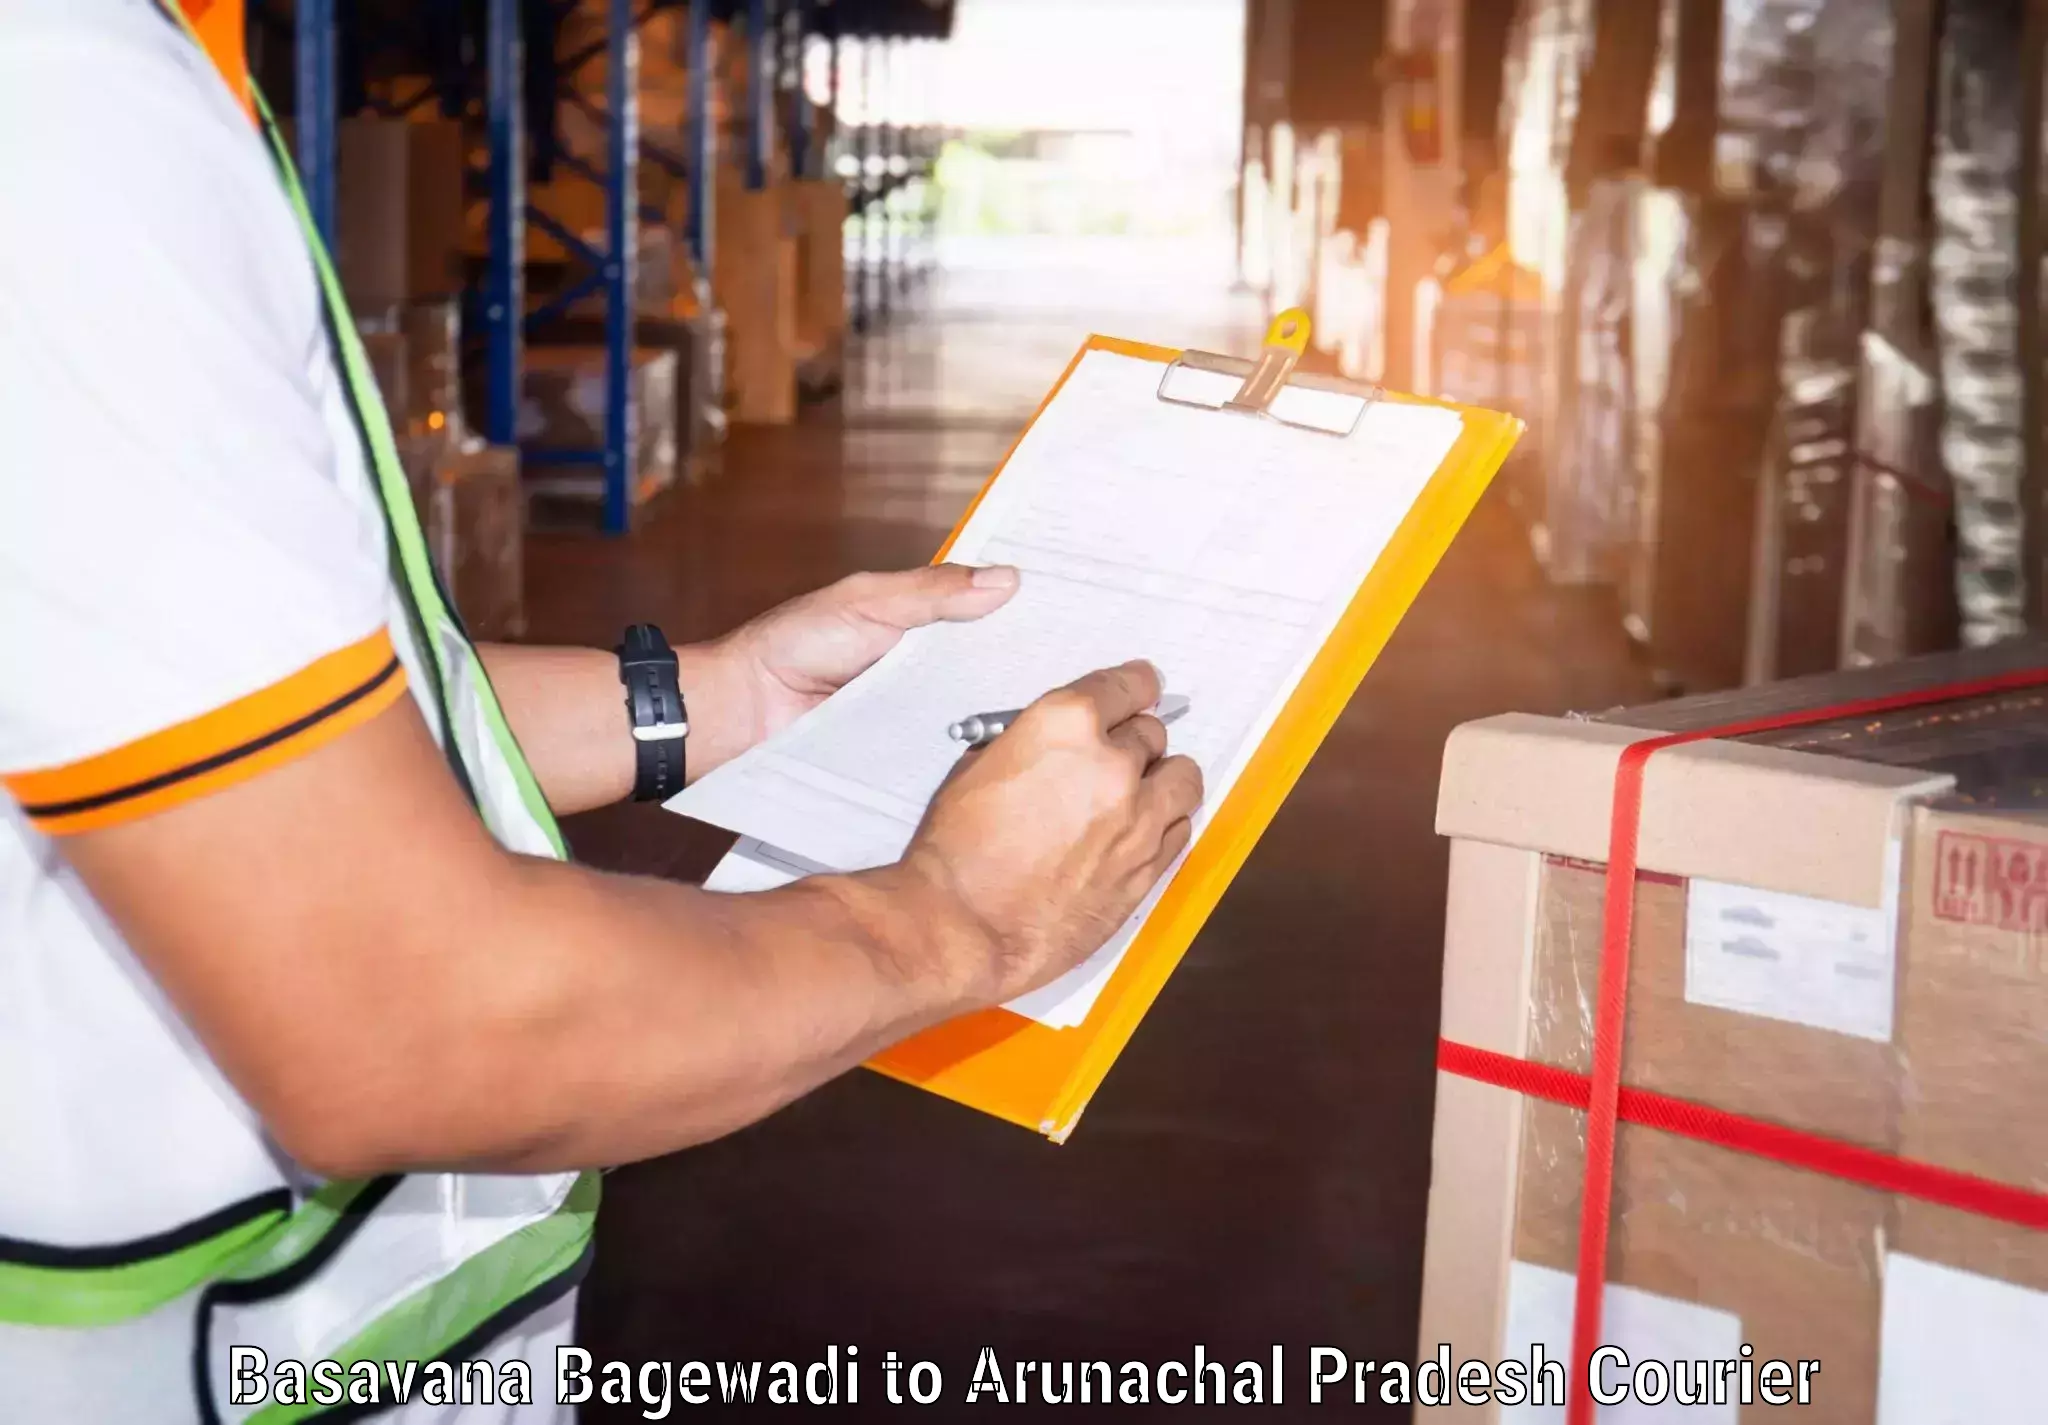 High-speed parcel service Basavana Bagewadi to Lohit